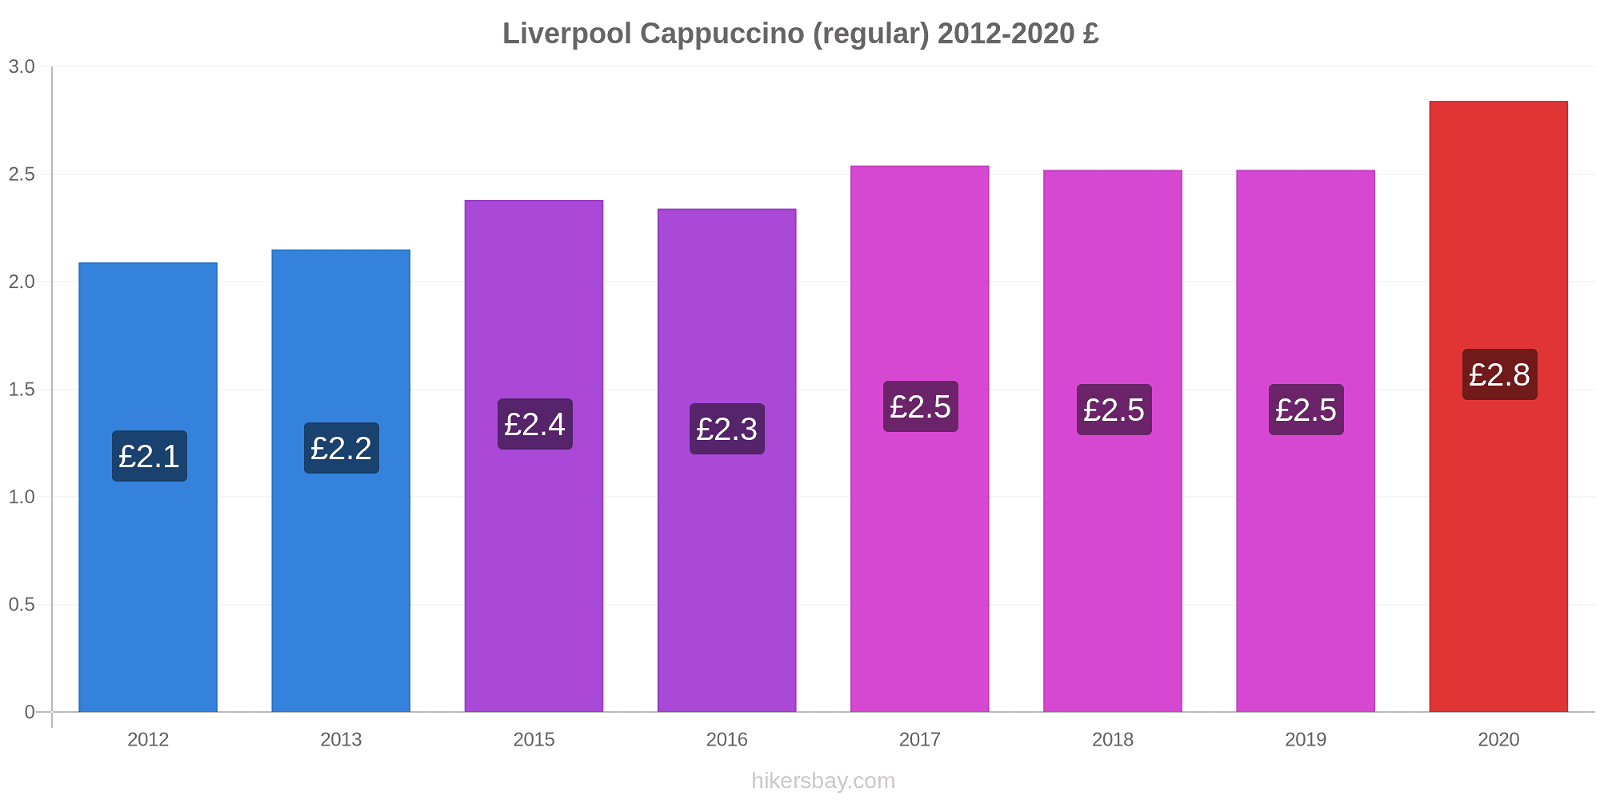 Liverpool variação de preço Capuccino (regular) hikersbay.com